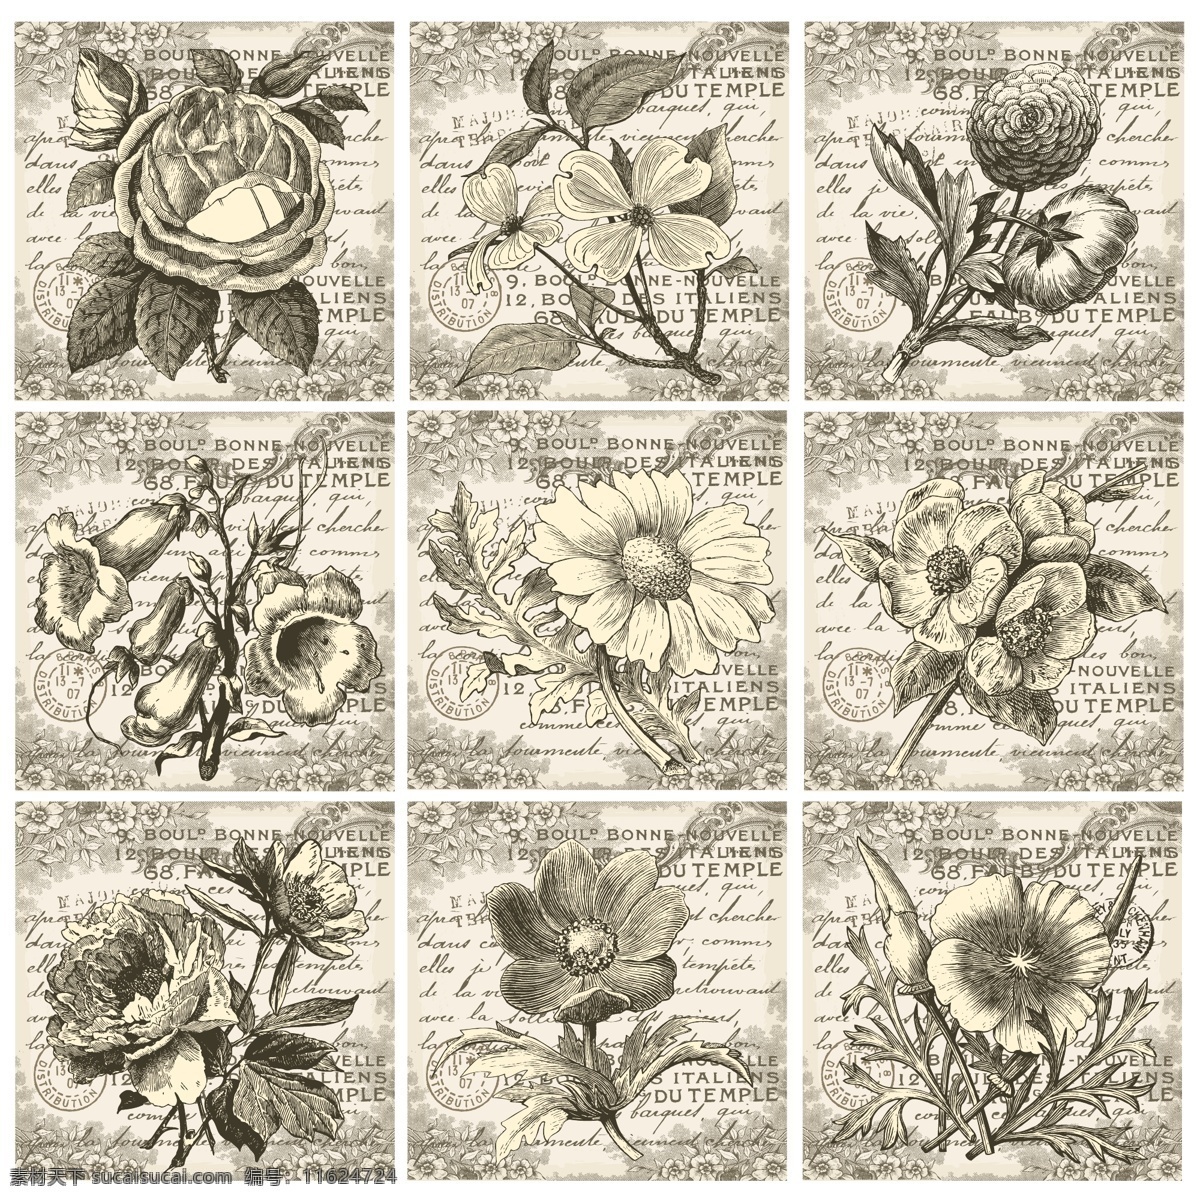 复古 欧美 中世纪 花卉 画报 矢量 矢量素材 设计素材